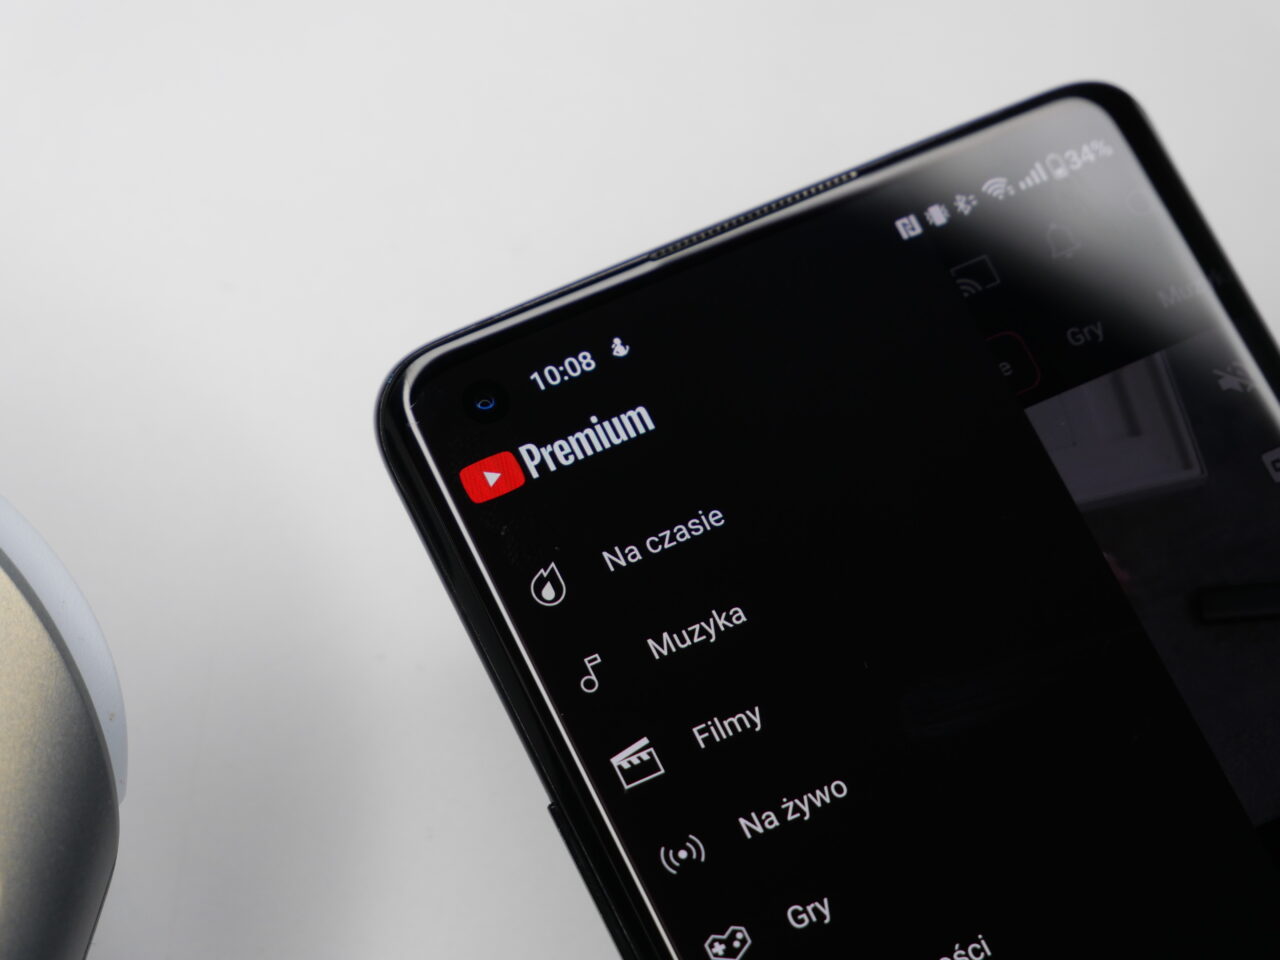 Smartfon wyświetlający interfejs aplikacji YouTube z akcentem na logo YouTube Premium, położony na białej powierzchni.